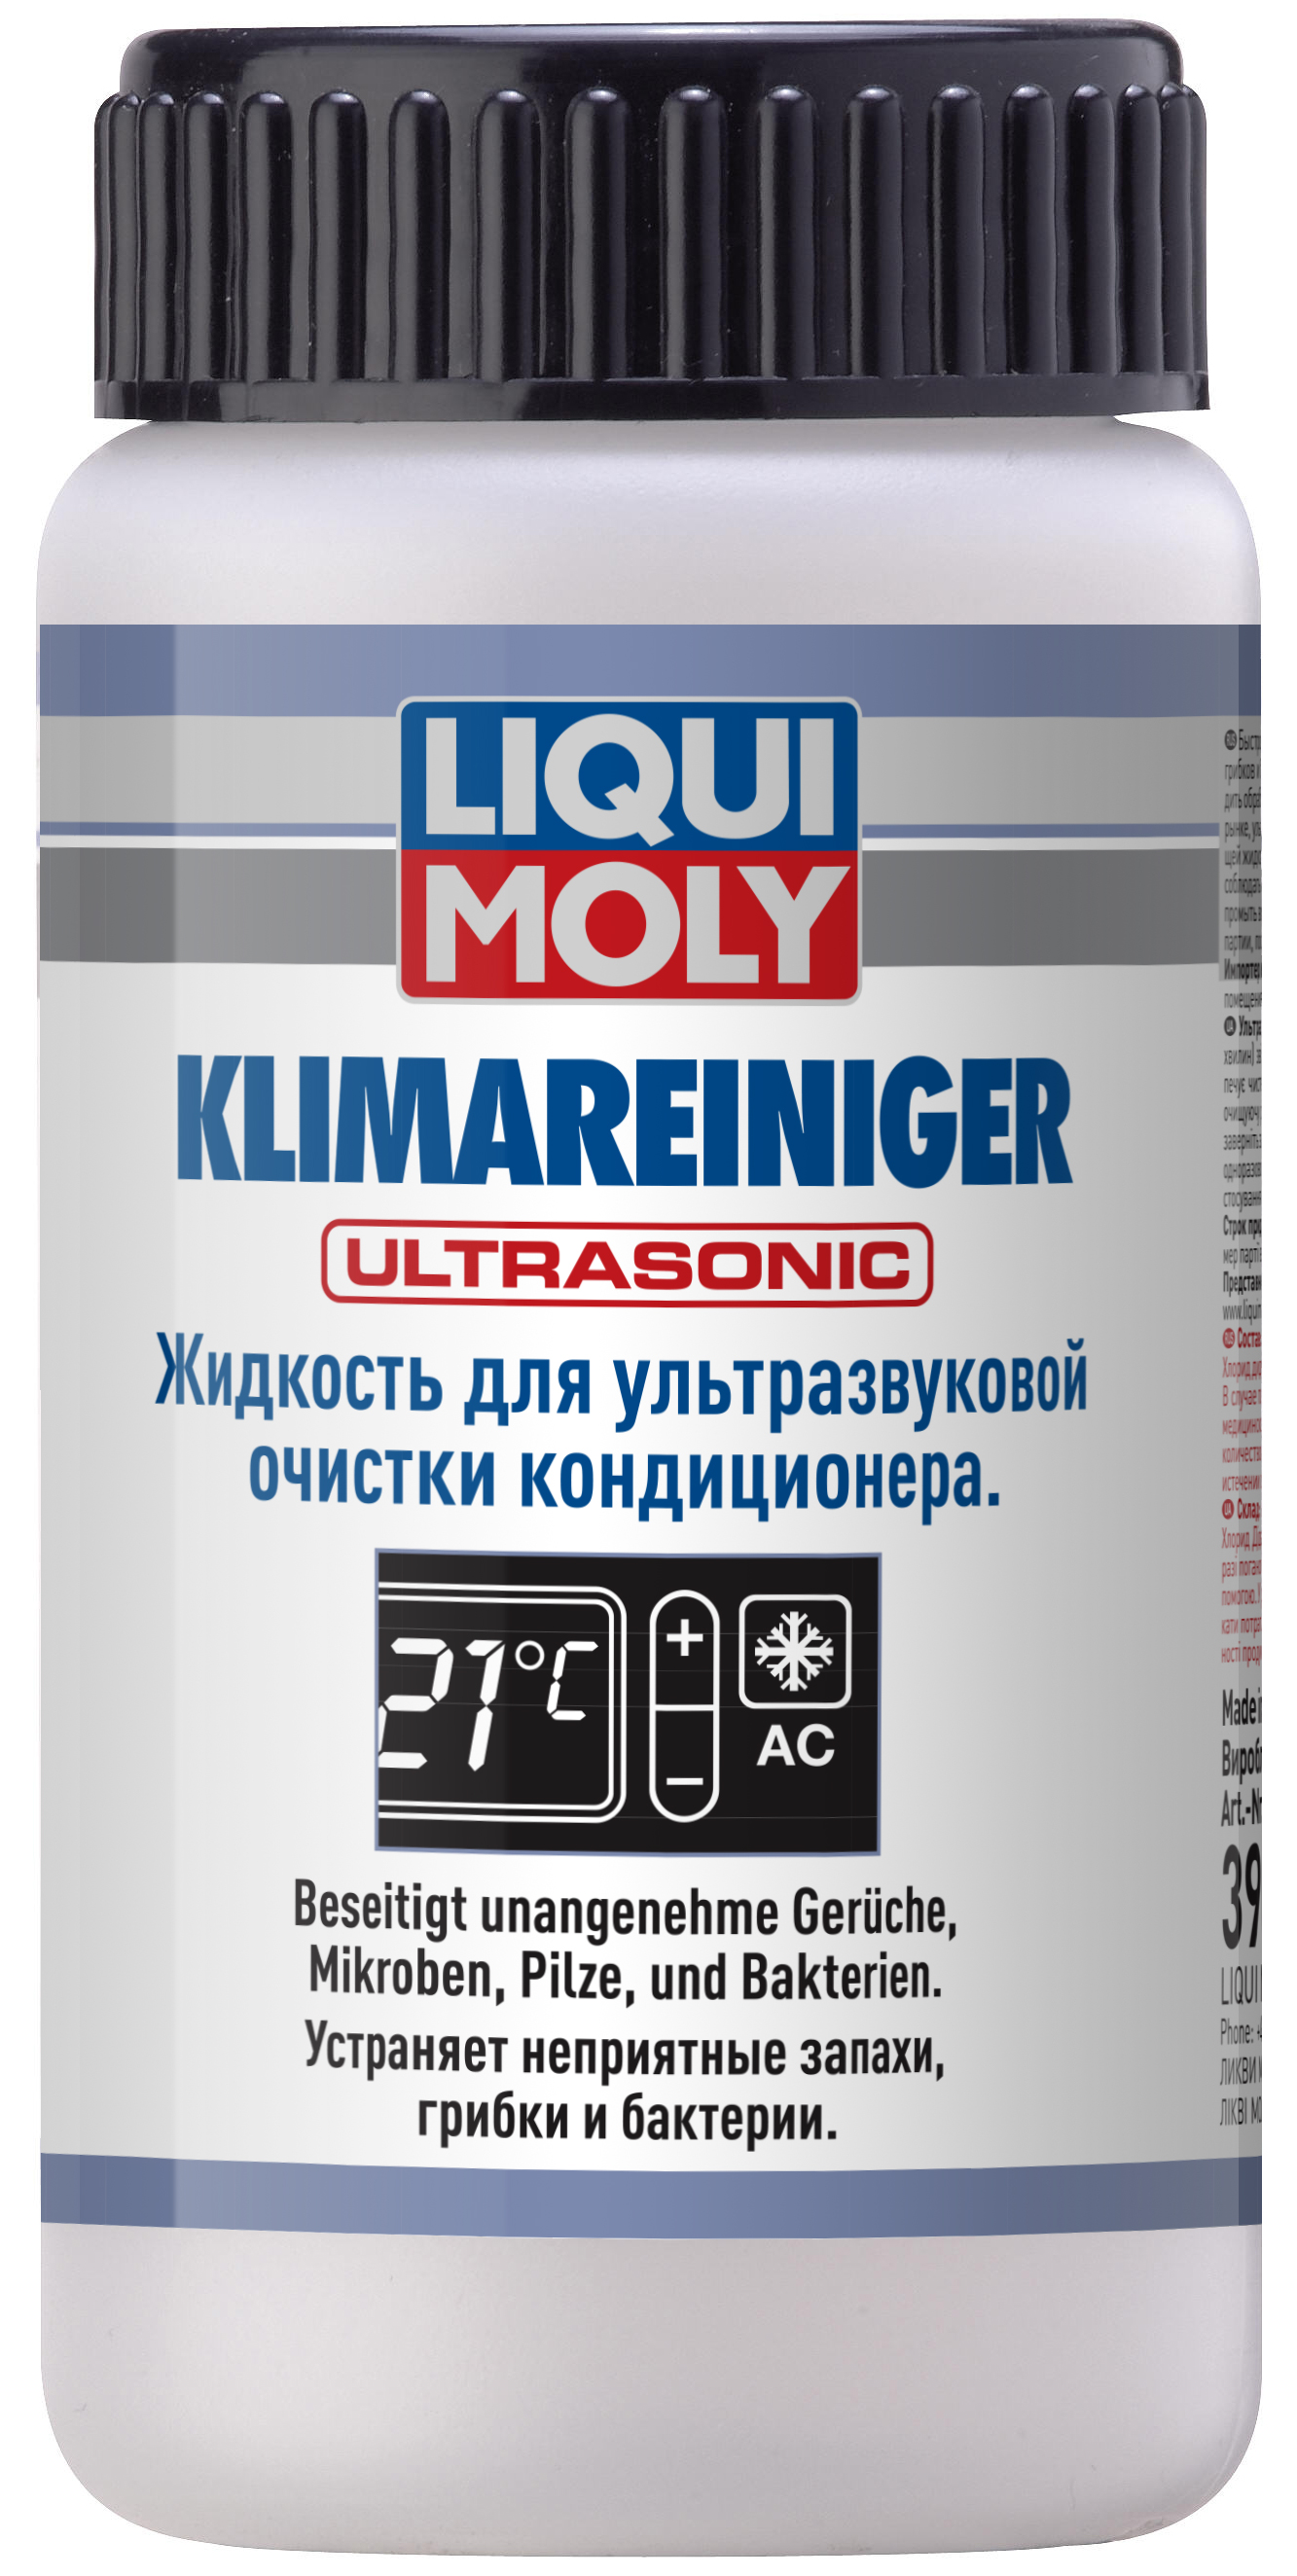 Жидкость для ультразвуковой очистки кондиционера Liqui Moly Klimareiniger Ultrasonic